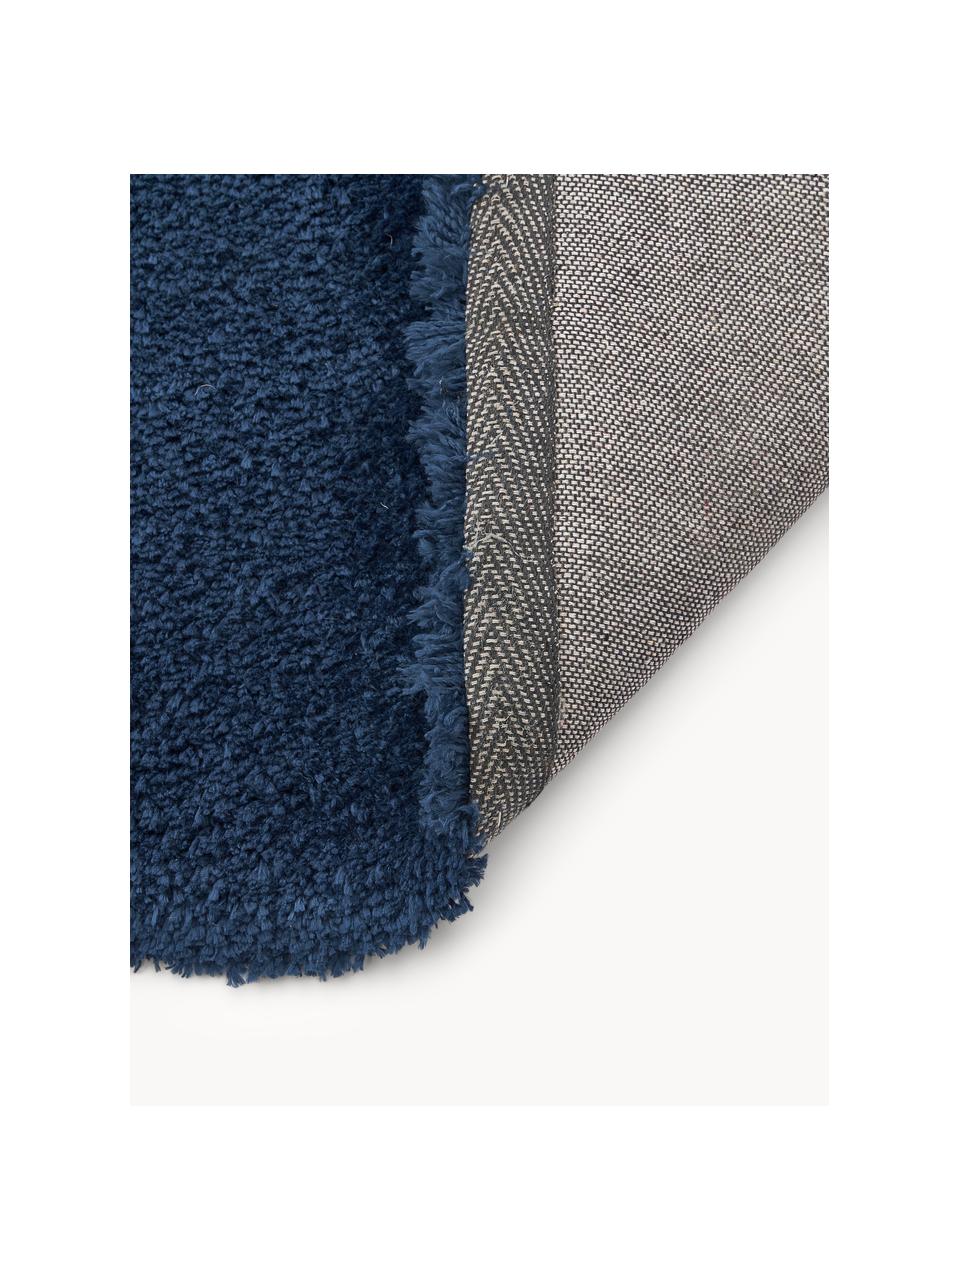 Načechraný koberec s vysokým vlasem Leighton, Tmavě modrá, Š 120 cm, D 180 cm (velikost S)